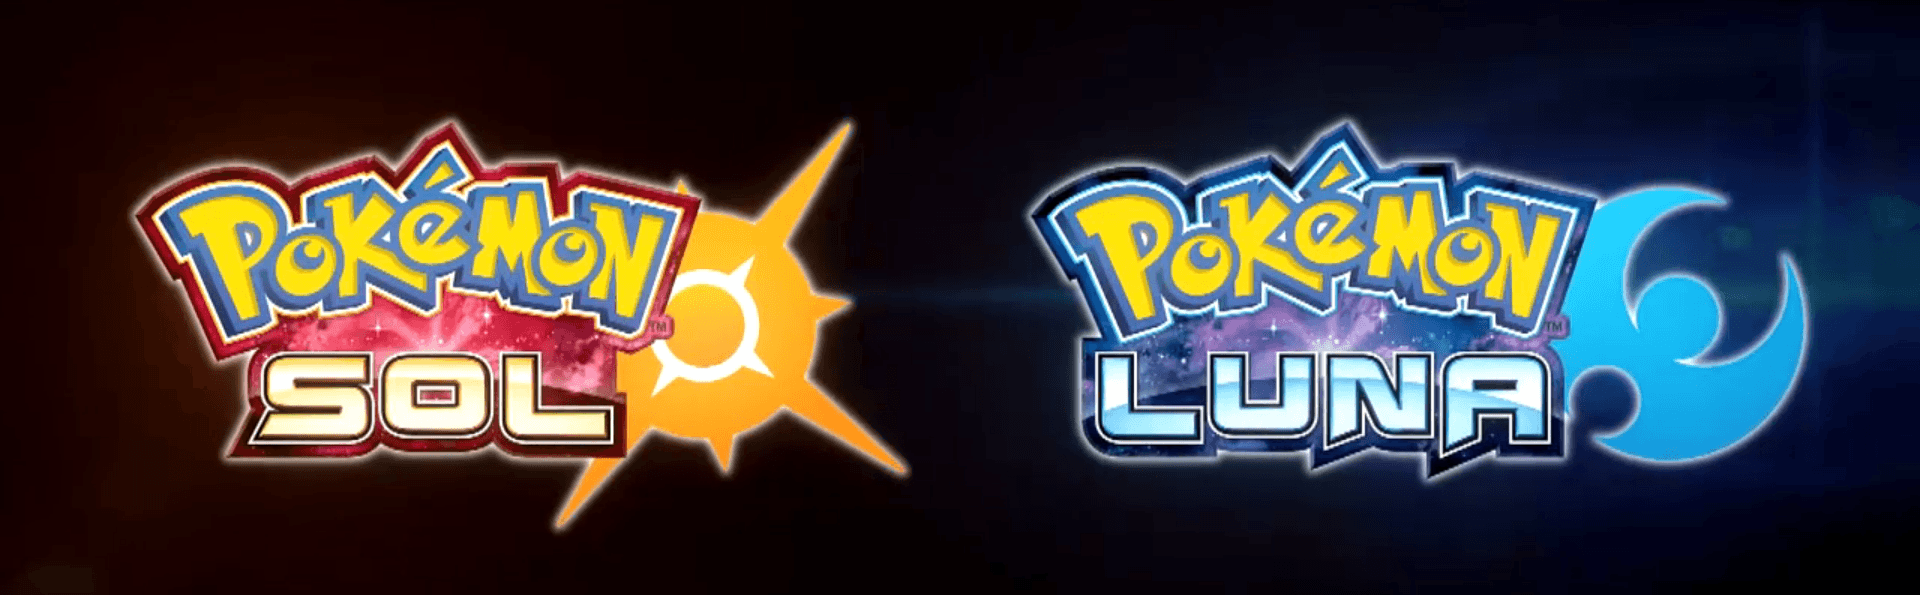 Desvelados los Movimientos Z, pulsera Z y nuevas formas en Pokémon Sol y Pokémon Luna